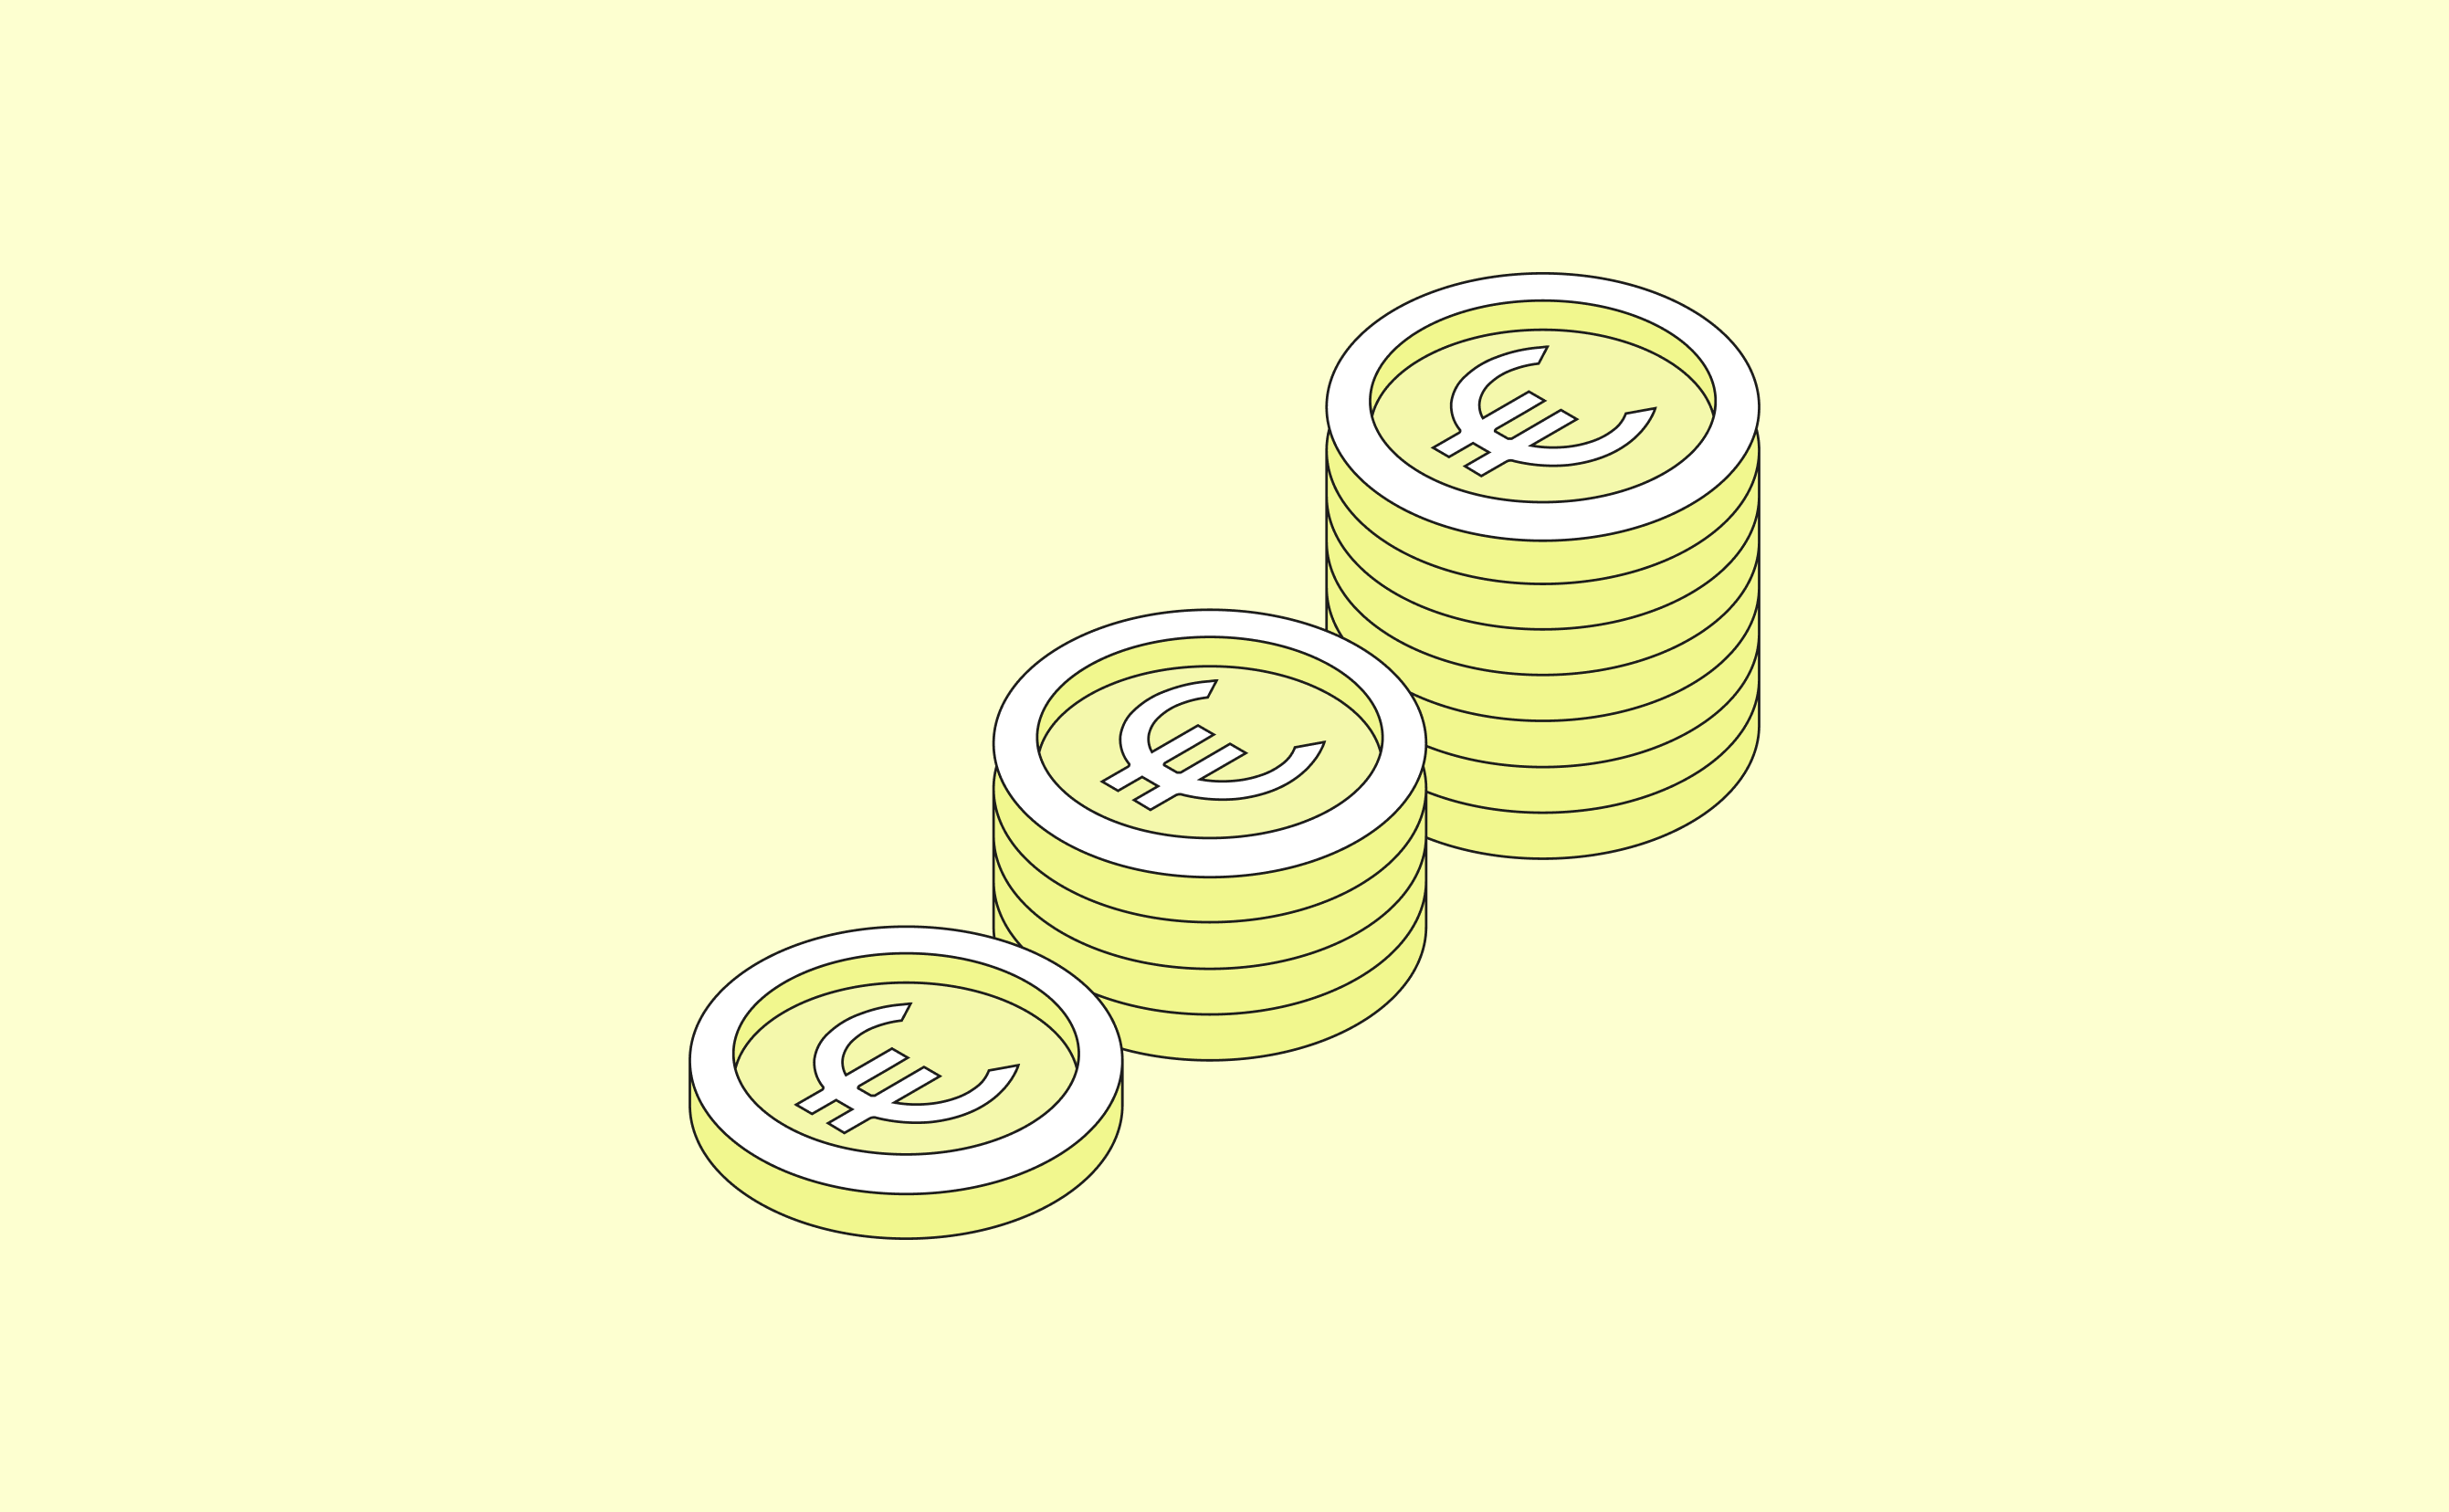 Couverture de message Pièces de monnaie moutarde